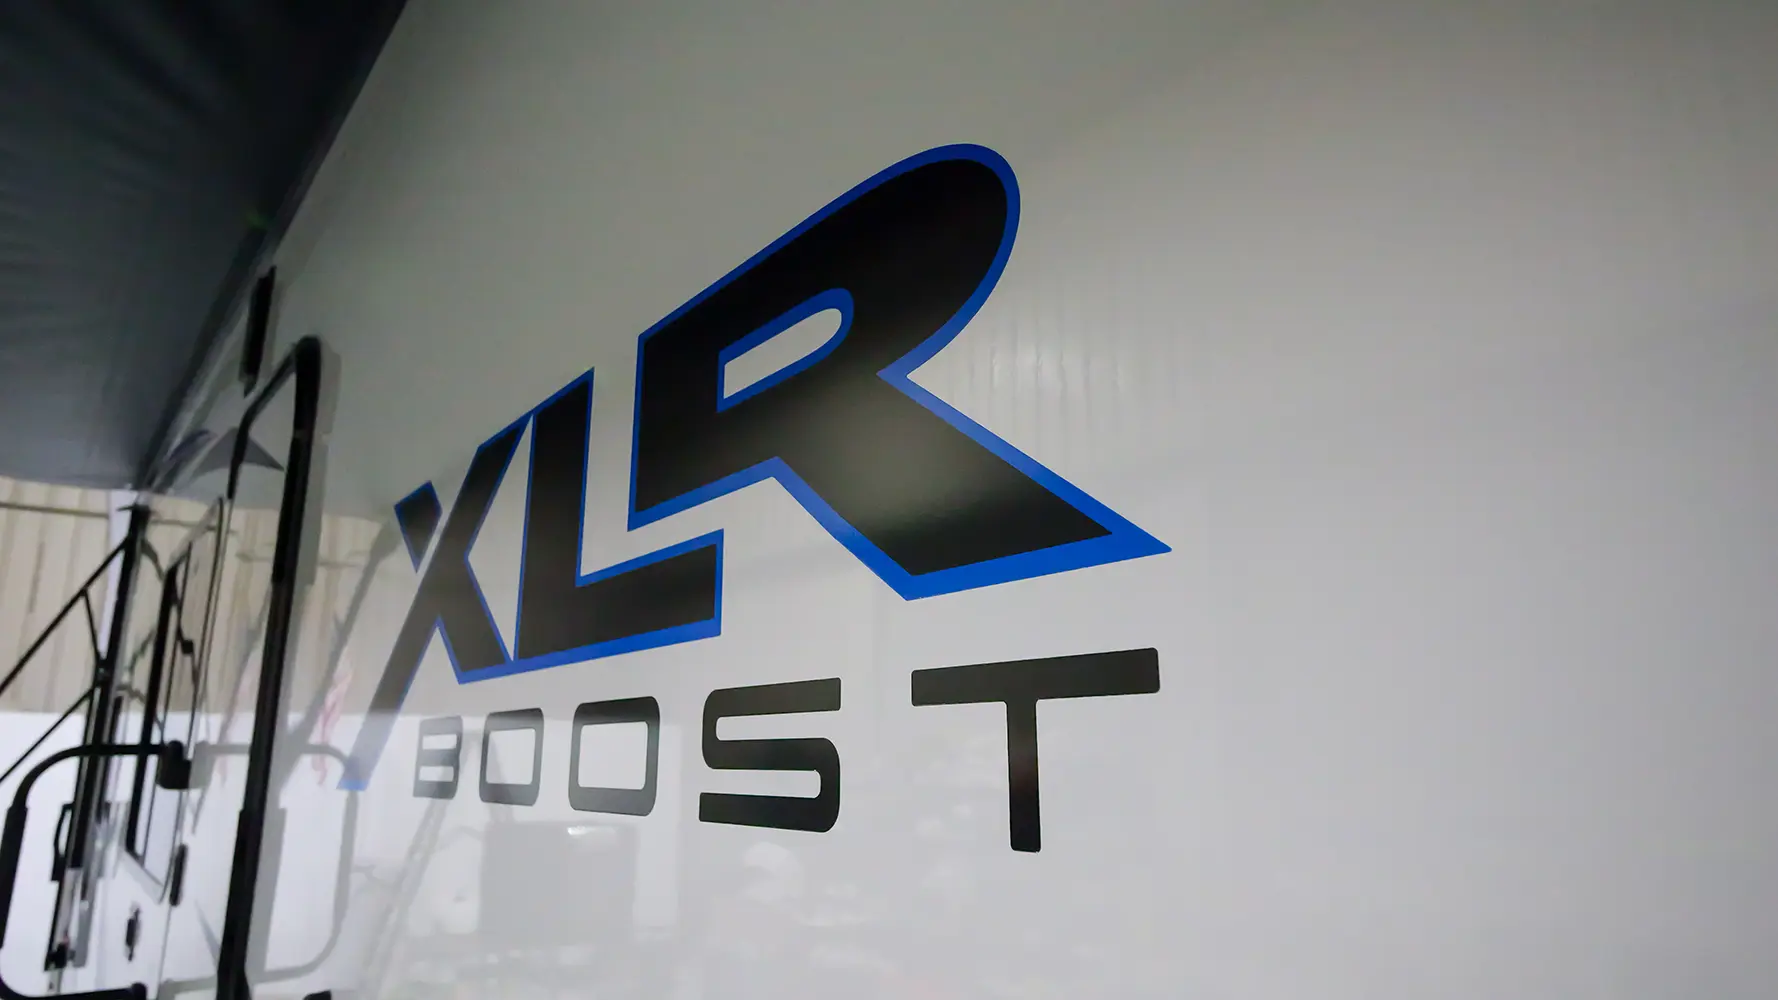 XLR Boost Gallery Image